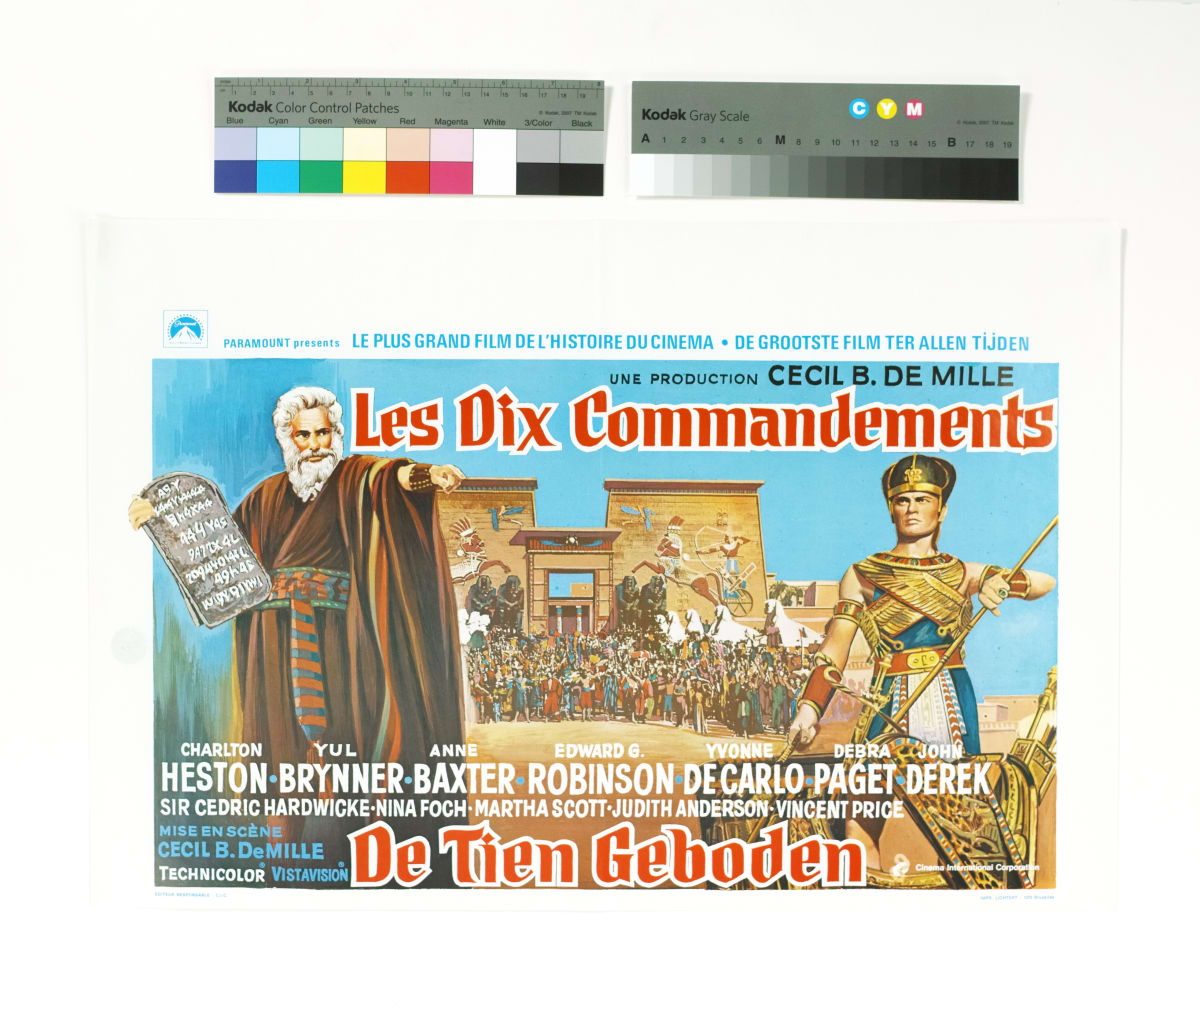 Ten Commandments, The (Les Dix Commandements, Belgium) 